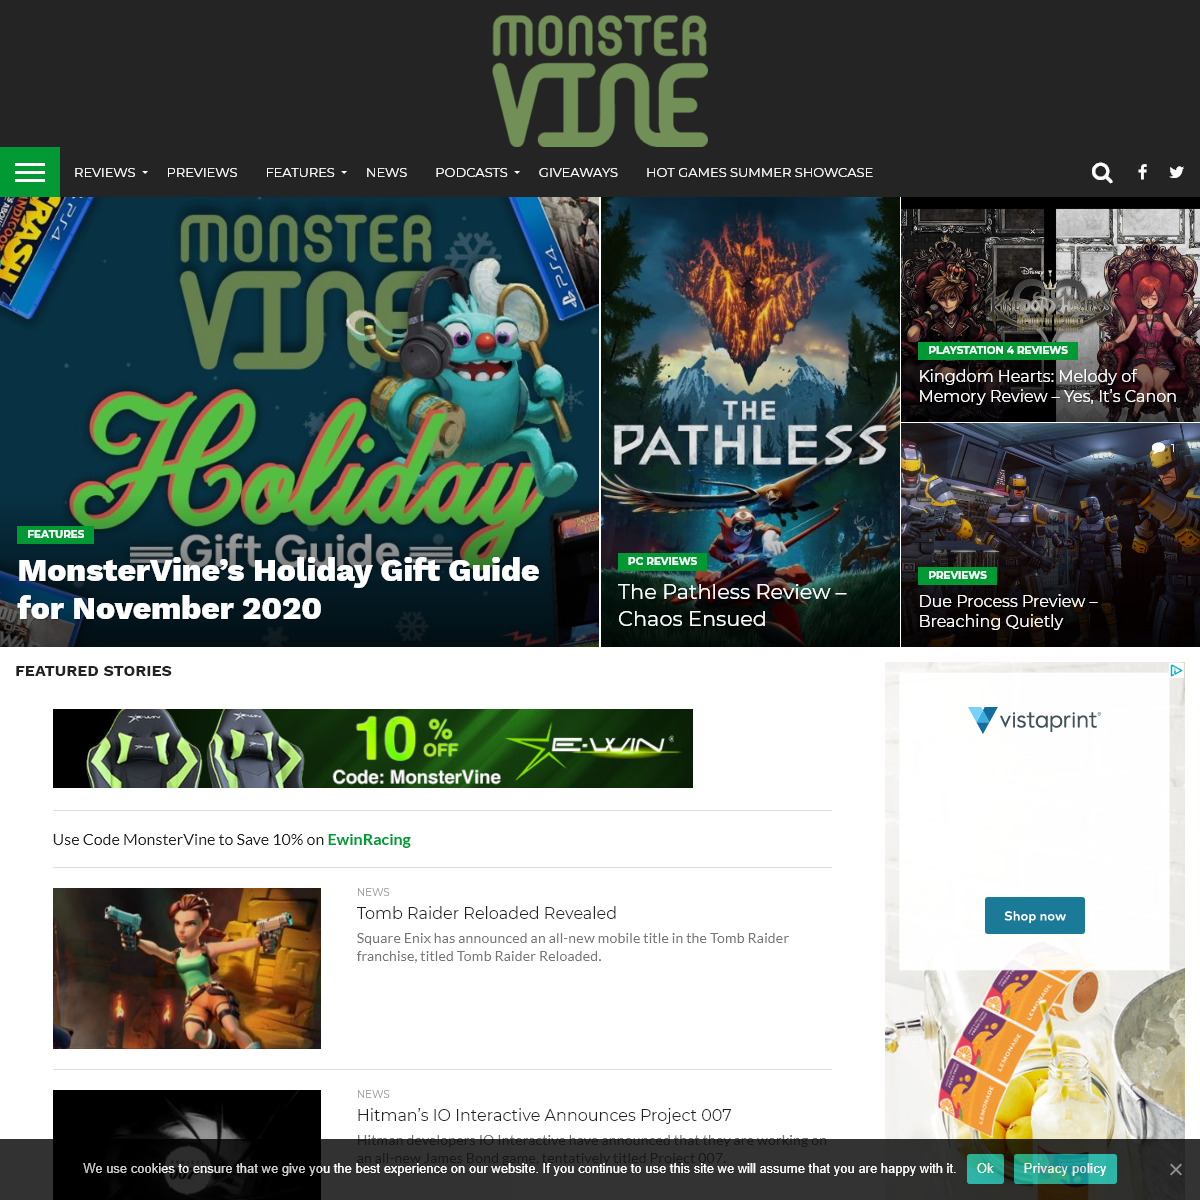 A complete backup of monstervine.com